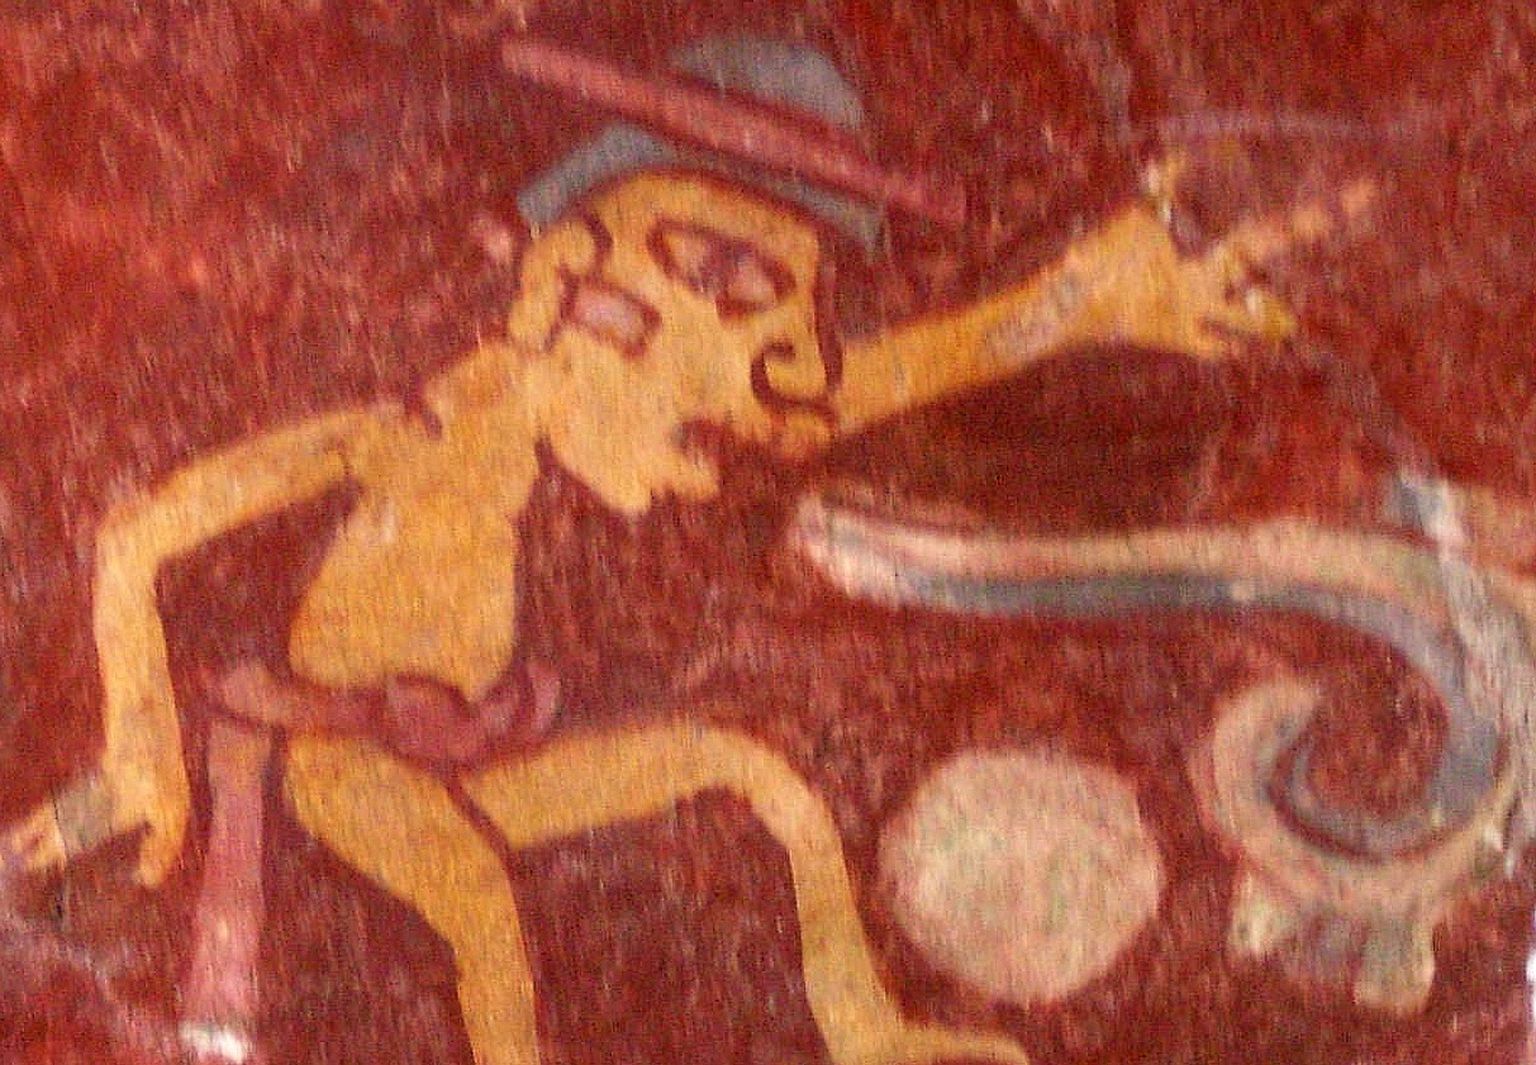 Väike detail seinamaali reproduktsioonist Teotihuacanis. Maalil on ka näide n-ö kõnerullist, mis sümboliseerib inimkeelt. Seinamaal on pärit umbes 2. sajandist.